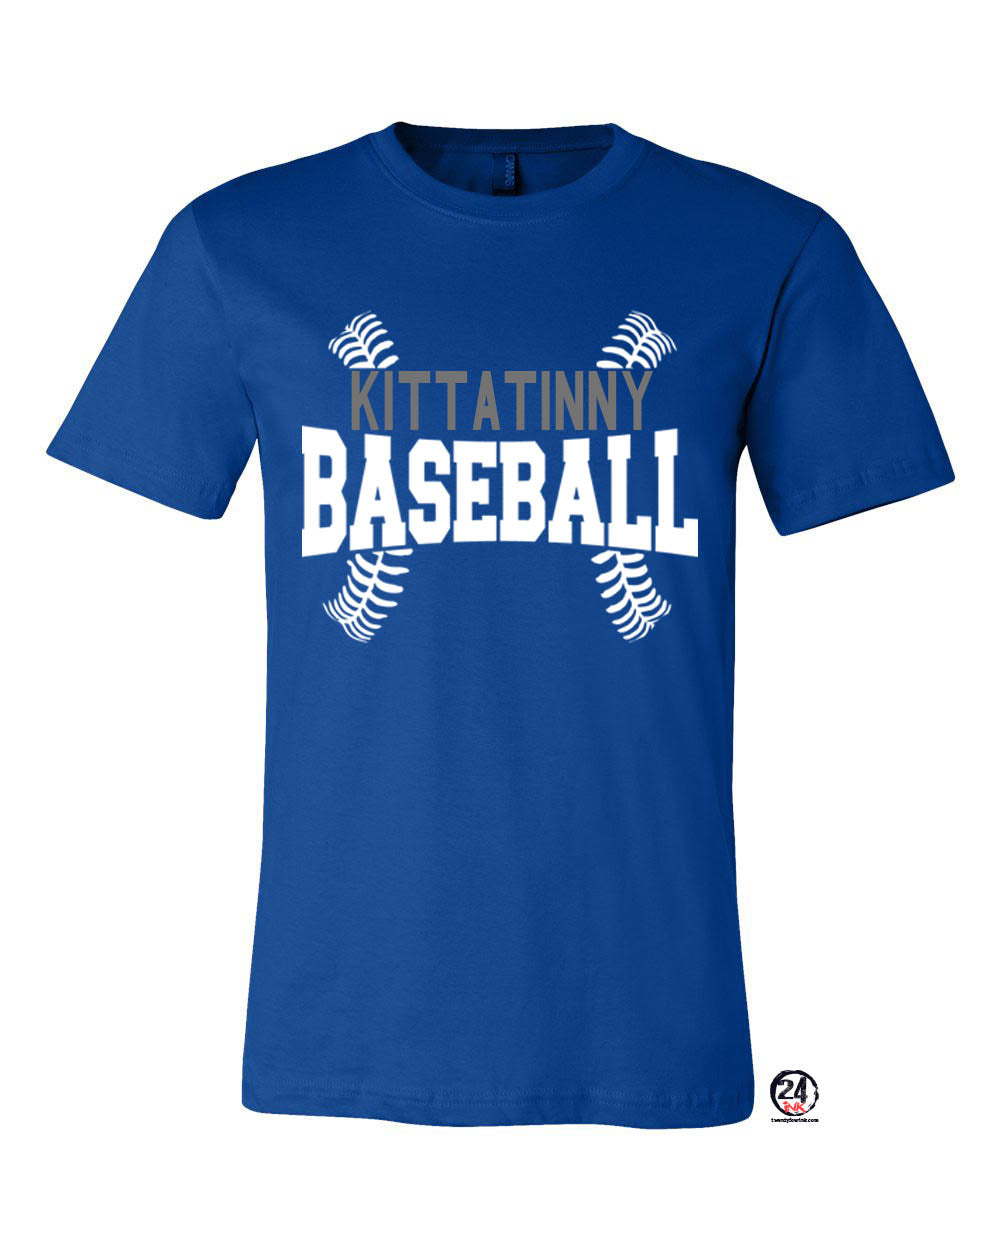 Kittatinny Baseball t-Shirt